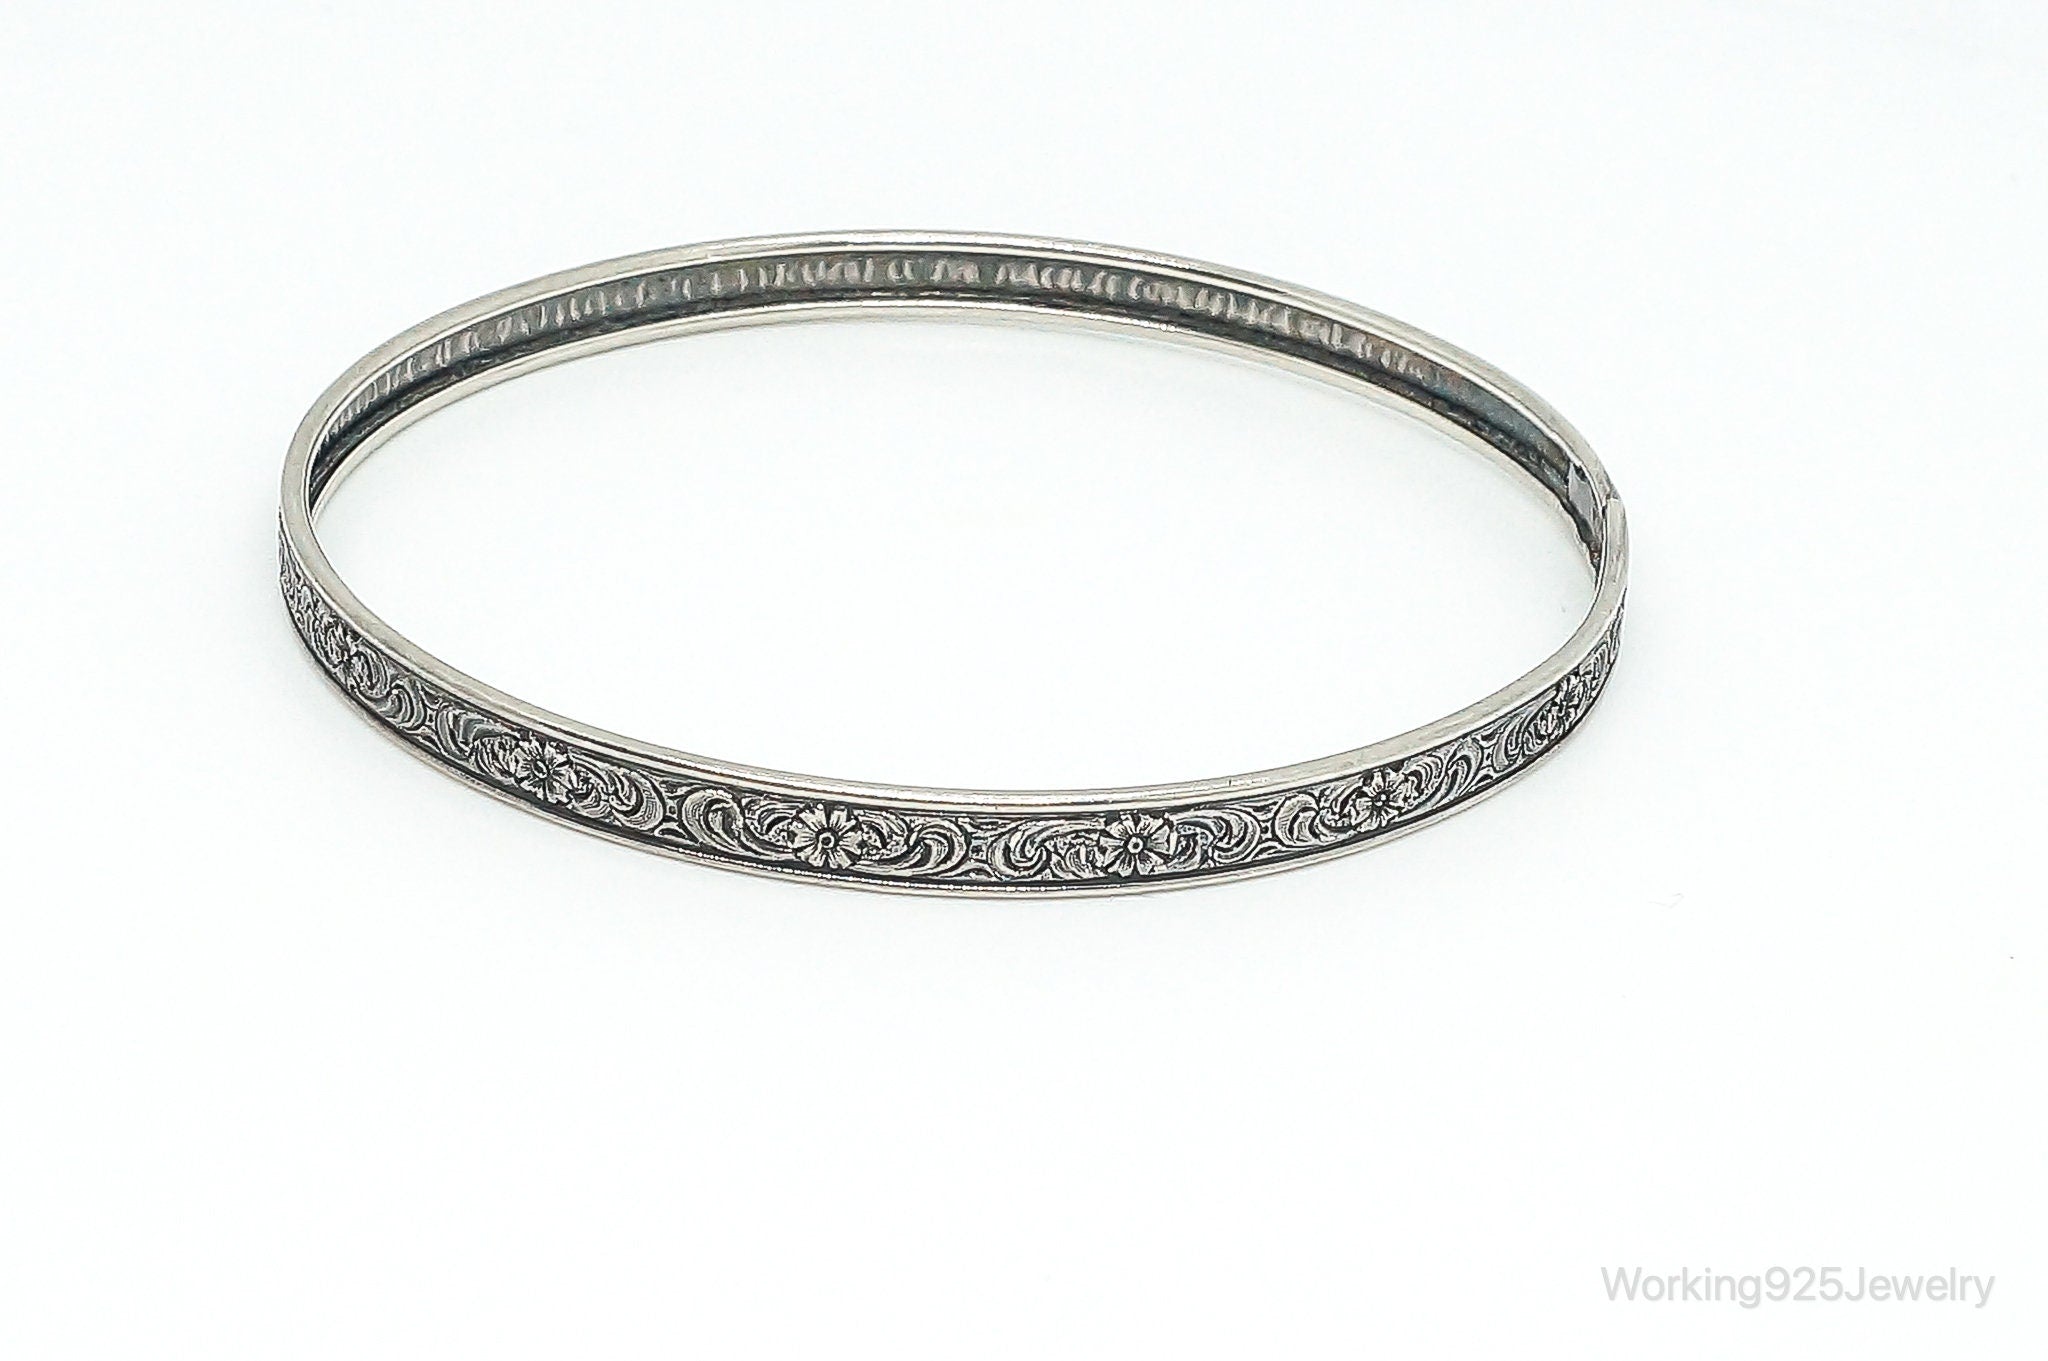 Antique Floral Pattern Sterling Silver Bangle Bracelet